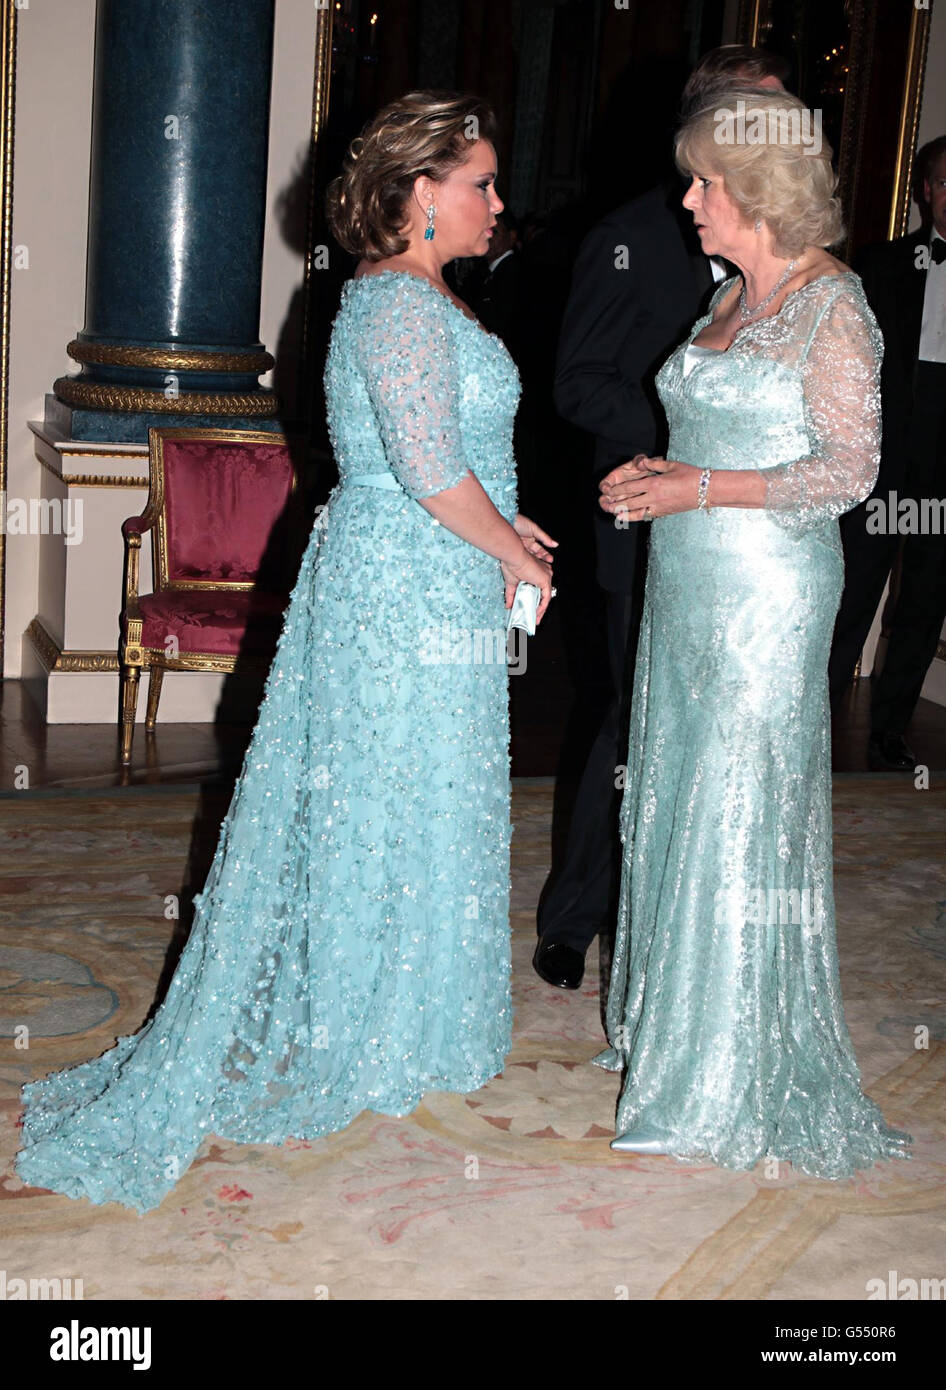 La duchesse de Cornouailles salue la Grande-duchesse Maria Teresa de Luxembourg alors qu'elle arrive pour un dîner au Palais de Buckingham, Londres, pour les souverains étrangers commémorant le Jubilé de diamant. Banque D'Images